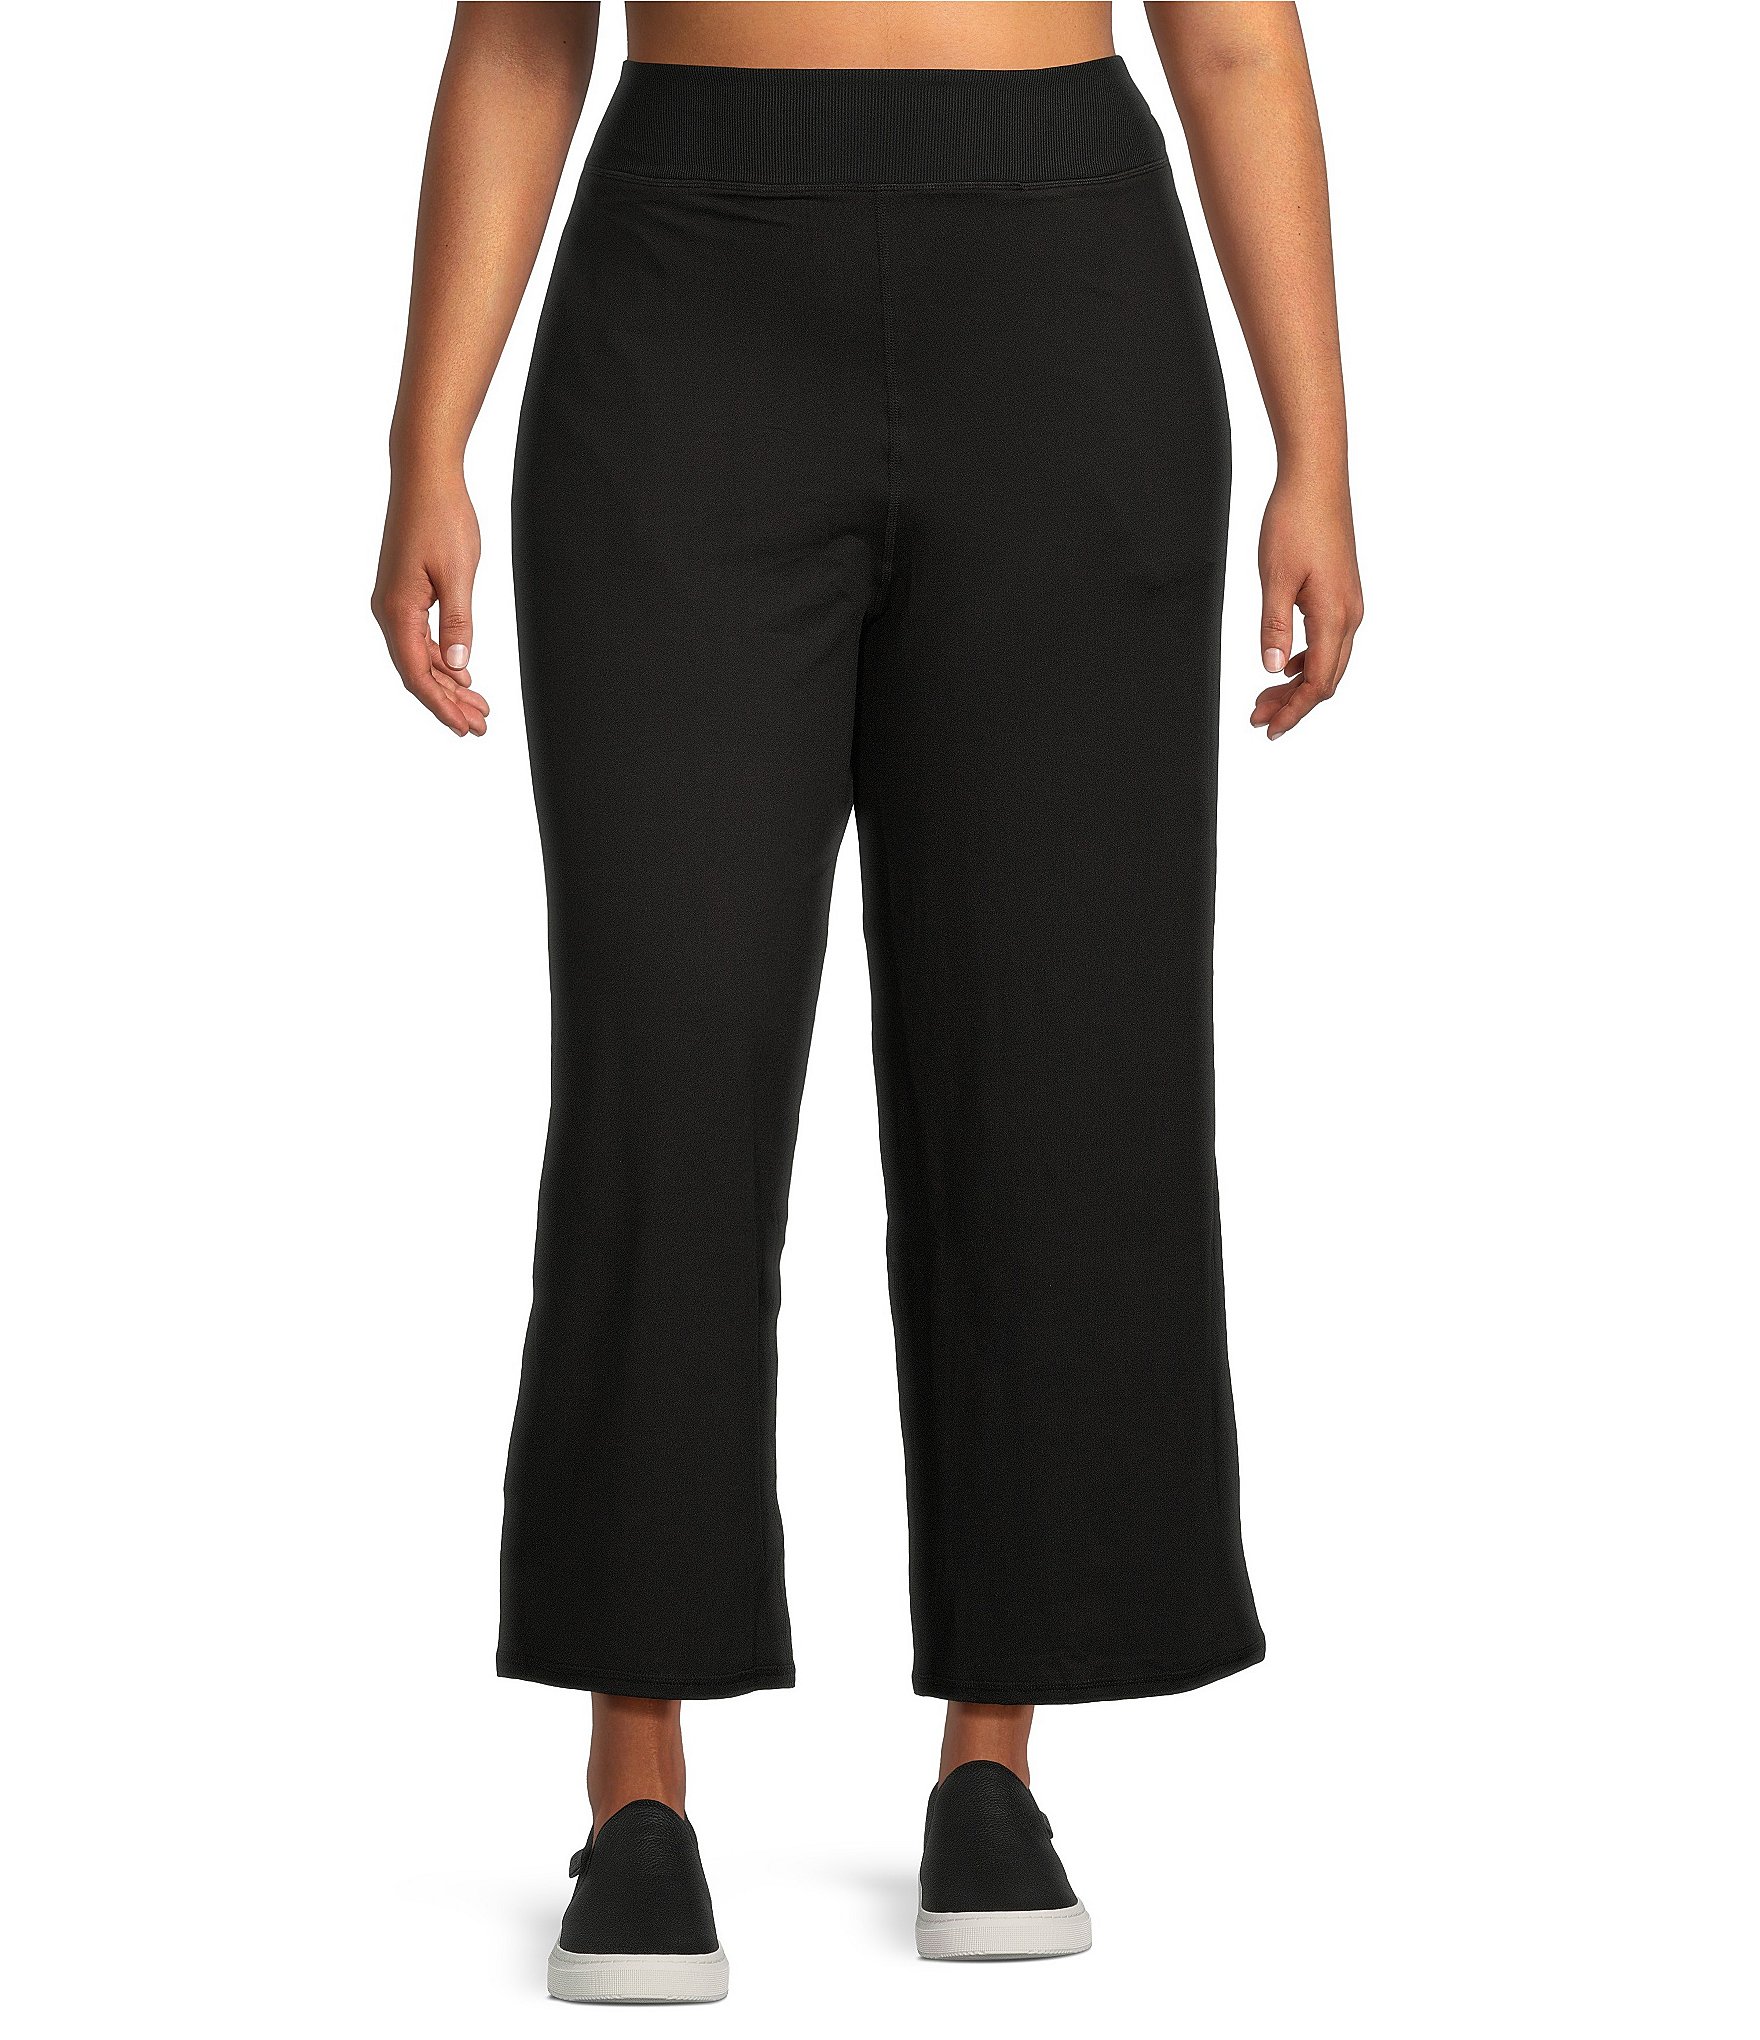 Love My Curves Women's Plus size 20 Black Active Wear Capri Pants (5787